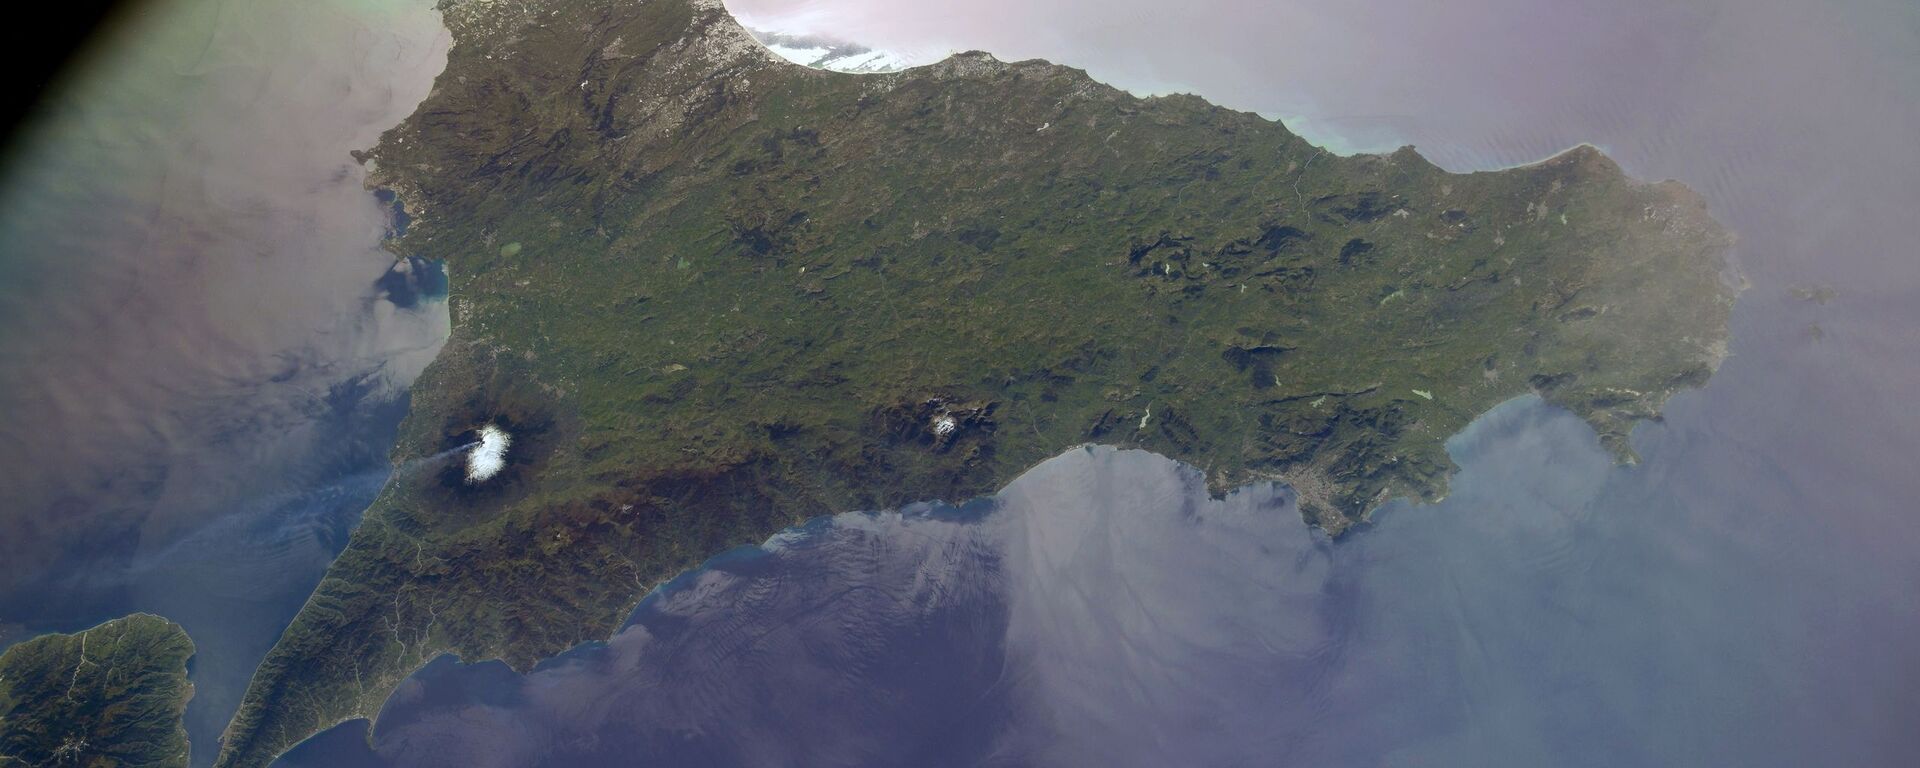 Вид из космоса на вулкан Этна на Сицилии, снятый российским космонавтом Сергеем Кудь-Сверчковым с МКС - Sputnik Lietuva, 1920, 22.05.2021